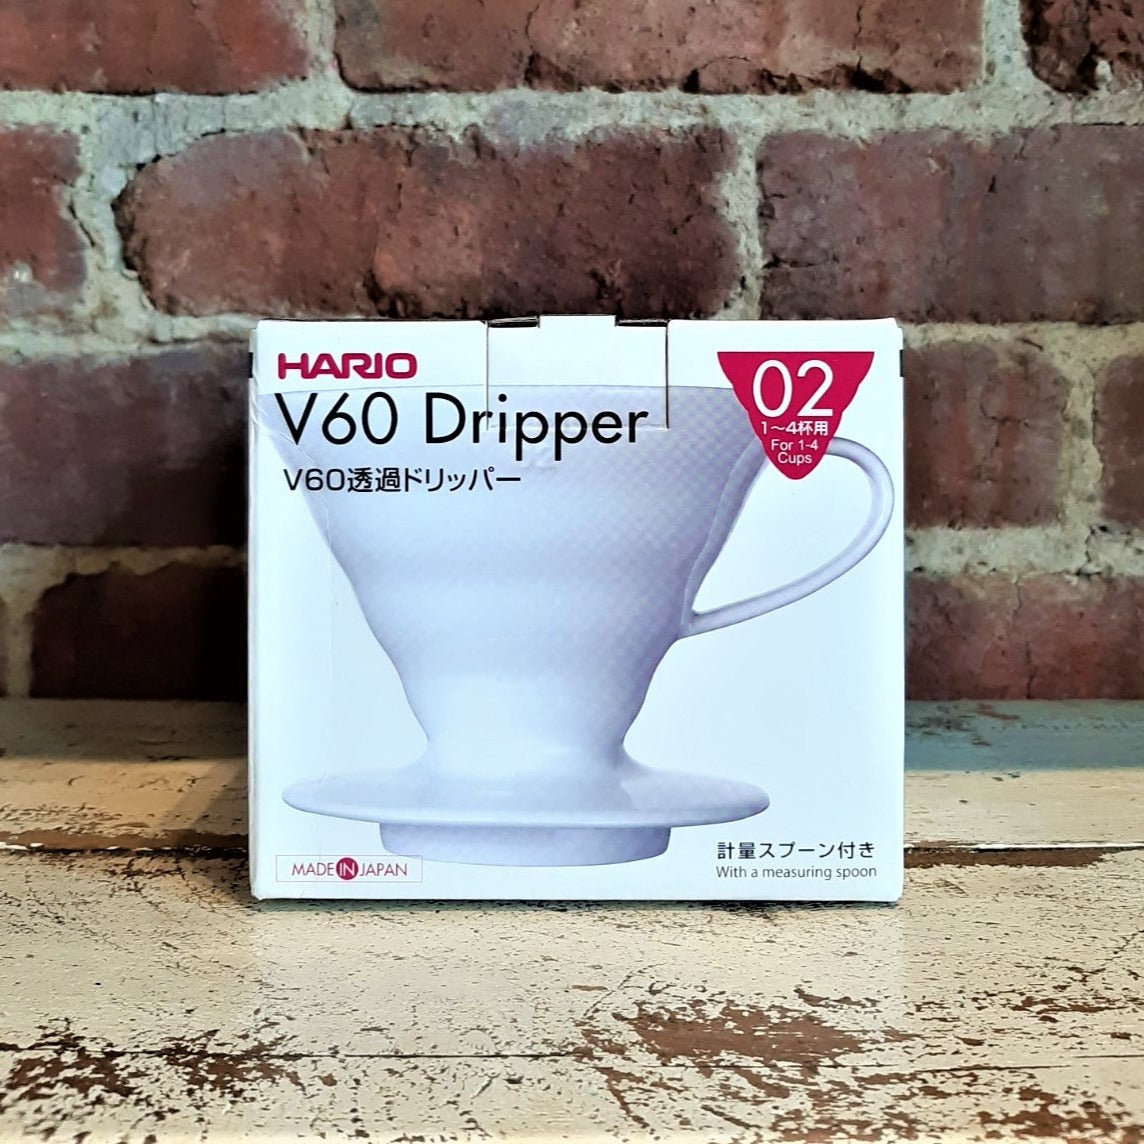 Hario - V60-02 Dripper céramique - Zab Café